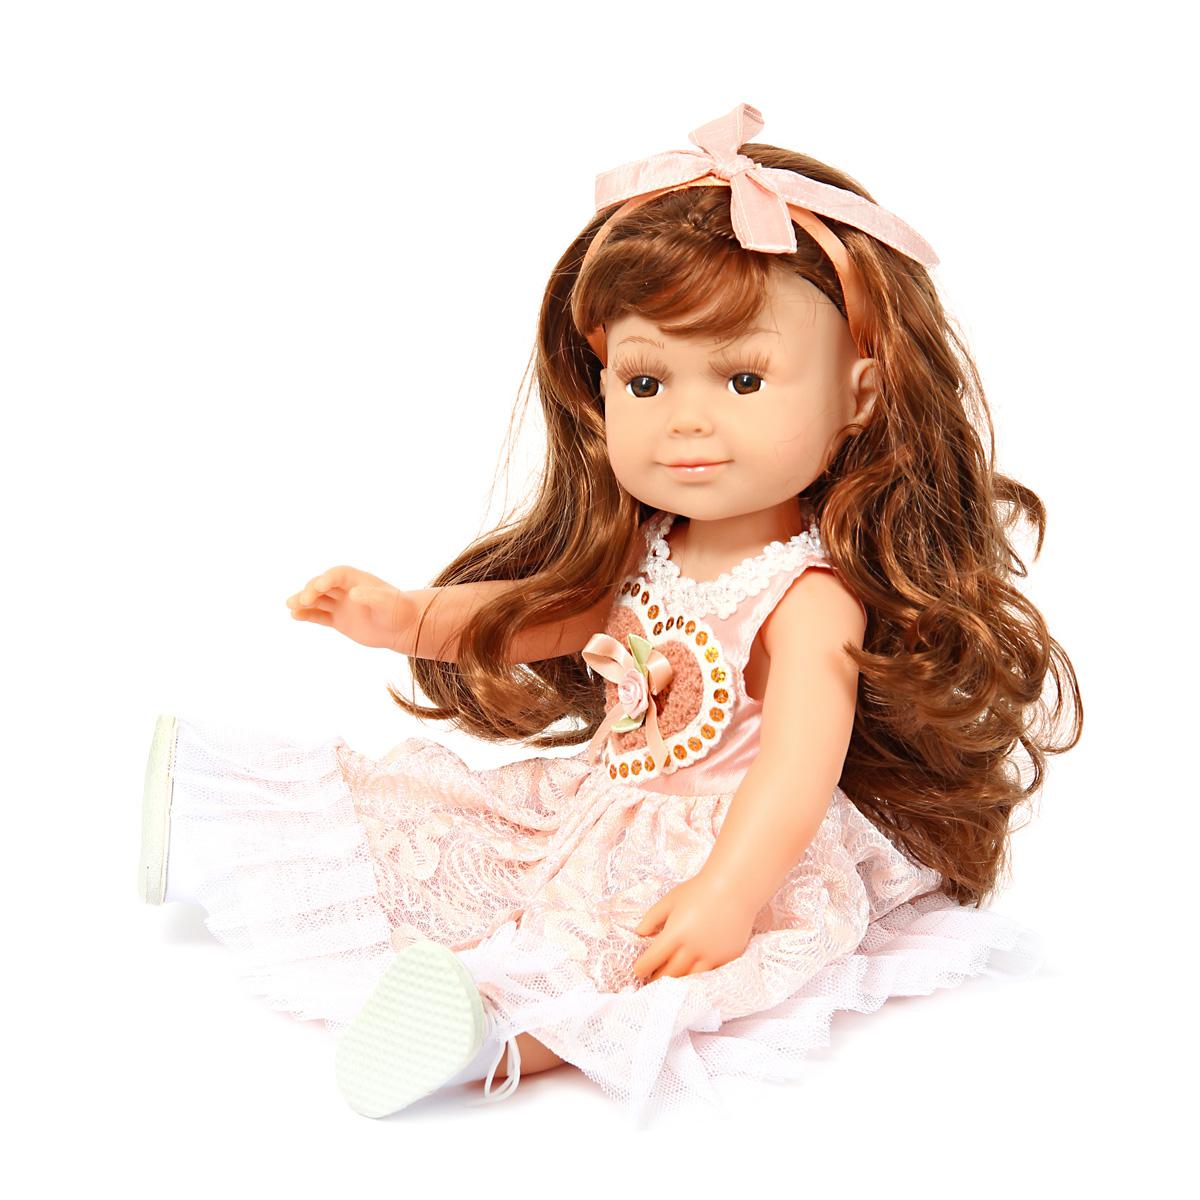 Кукла Купить Через Интернет Магазин